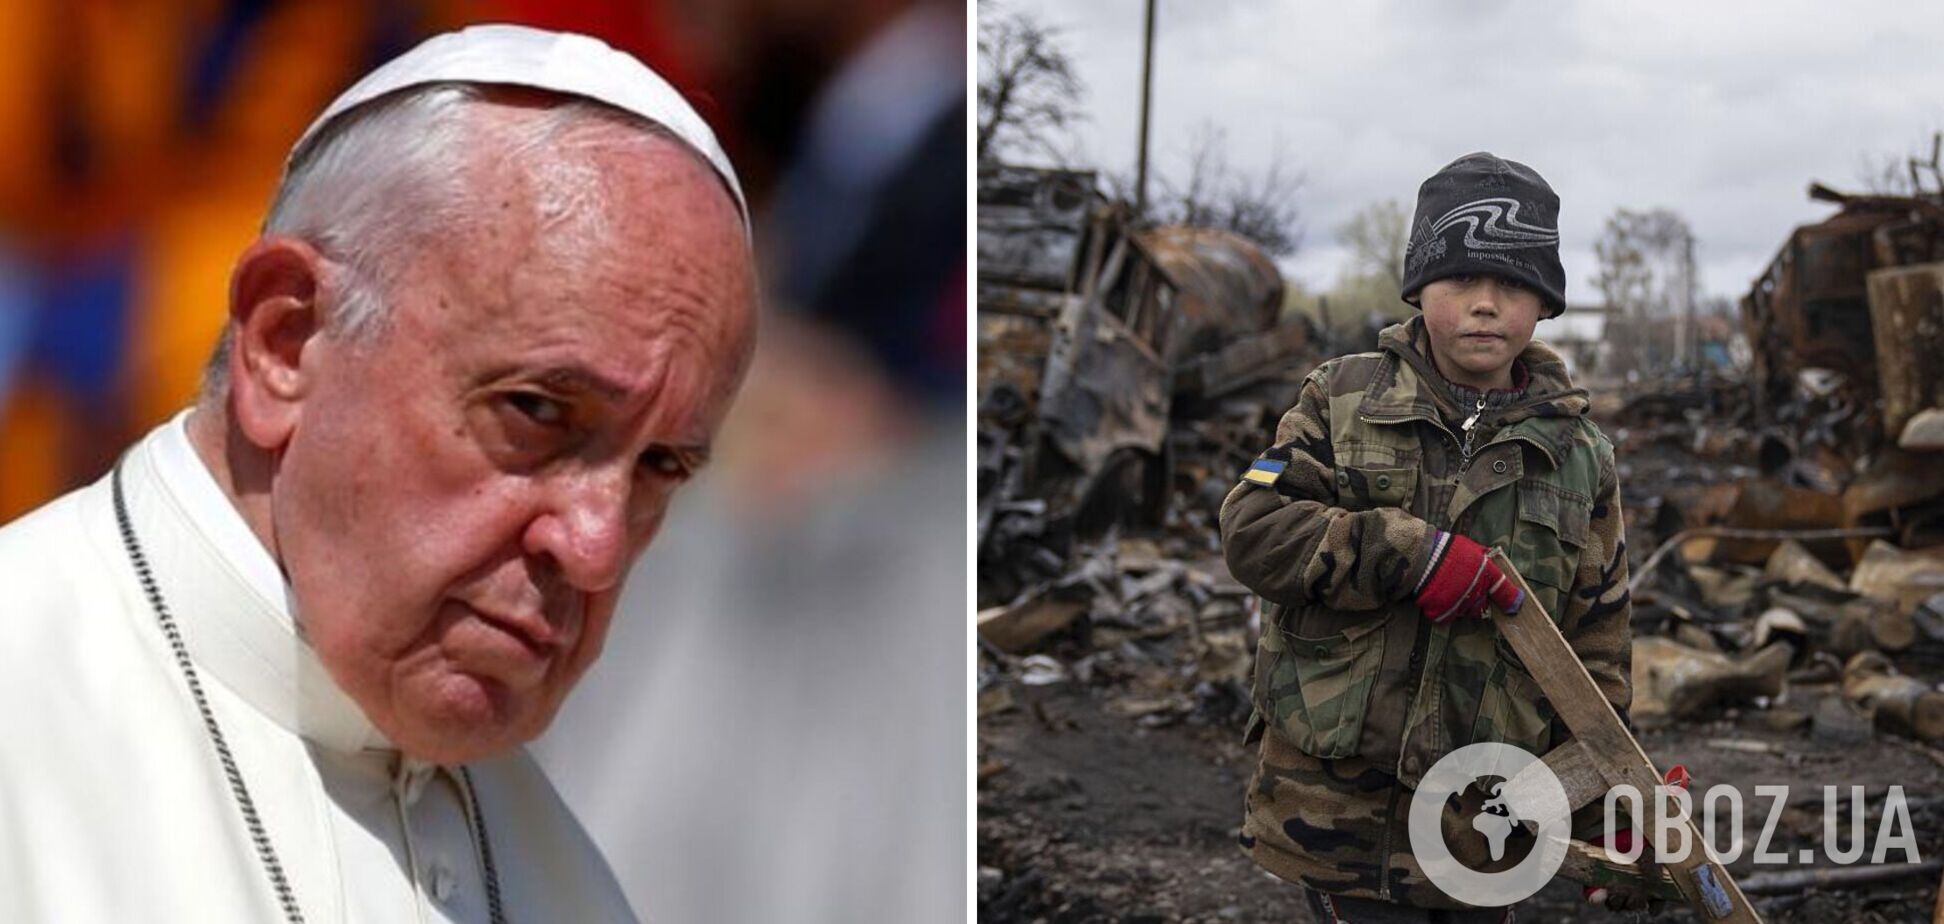 Папа Римский осудил жестокость РФ в Украине, но допустил, что 'война была спровоцирована'